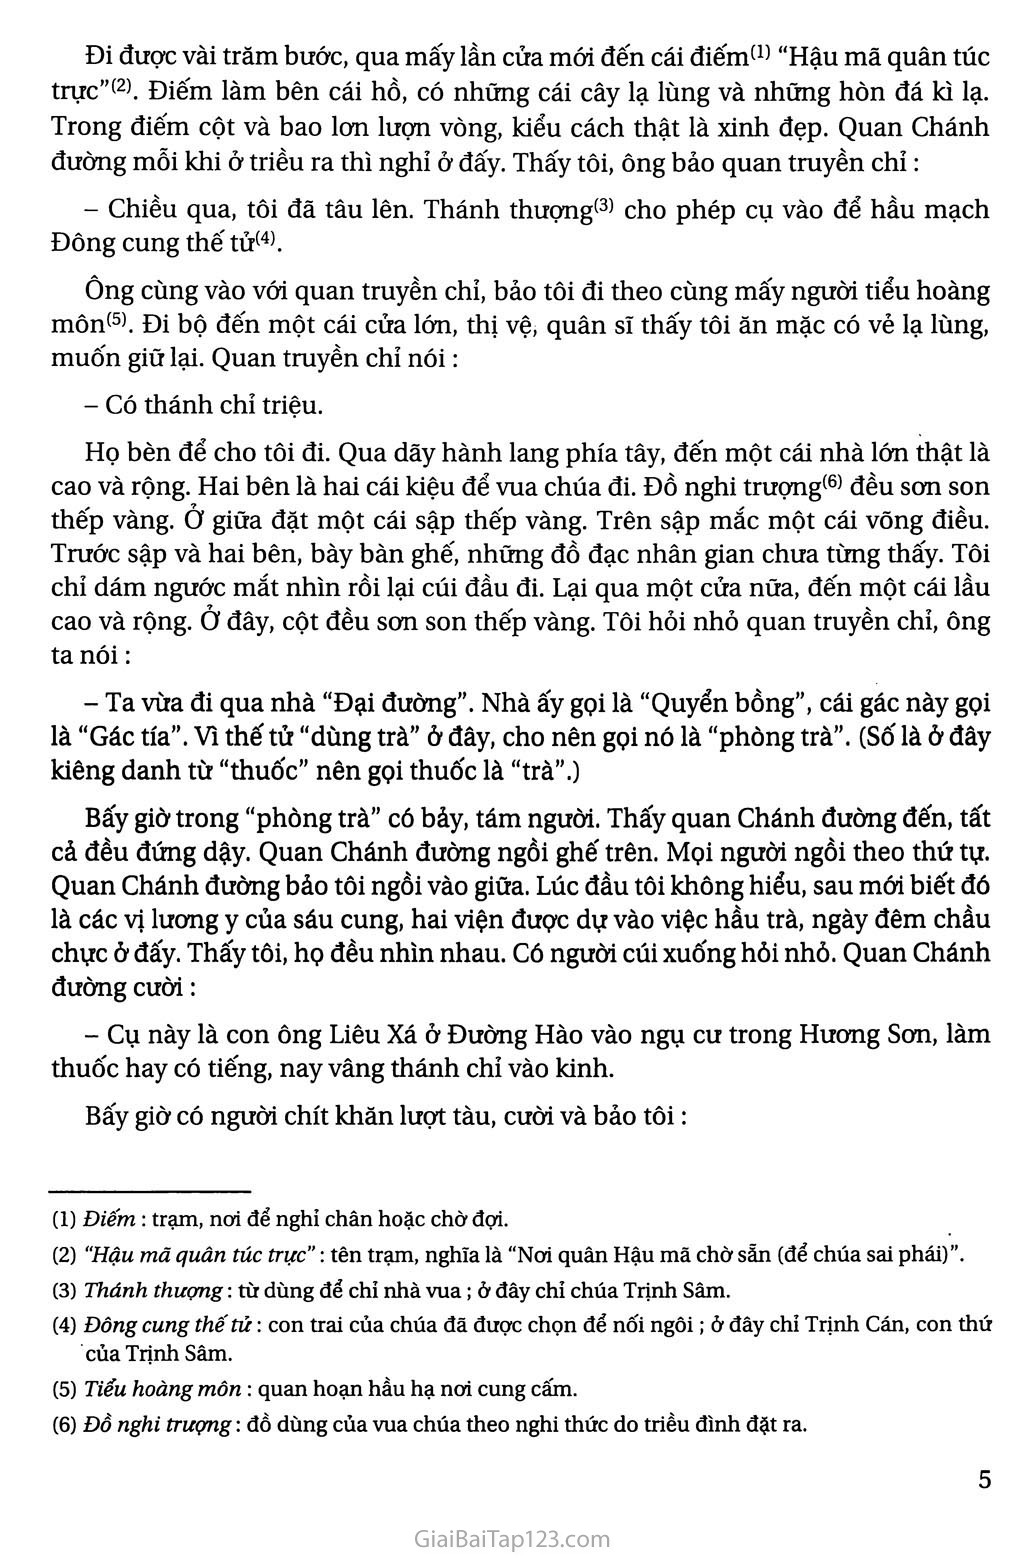 Vào phủ chúa Trịnh (trích Thượng kinh ký sự) trang 3